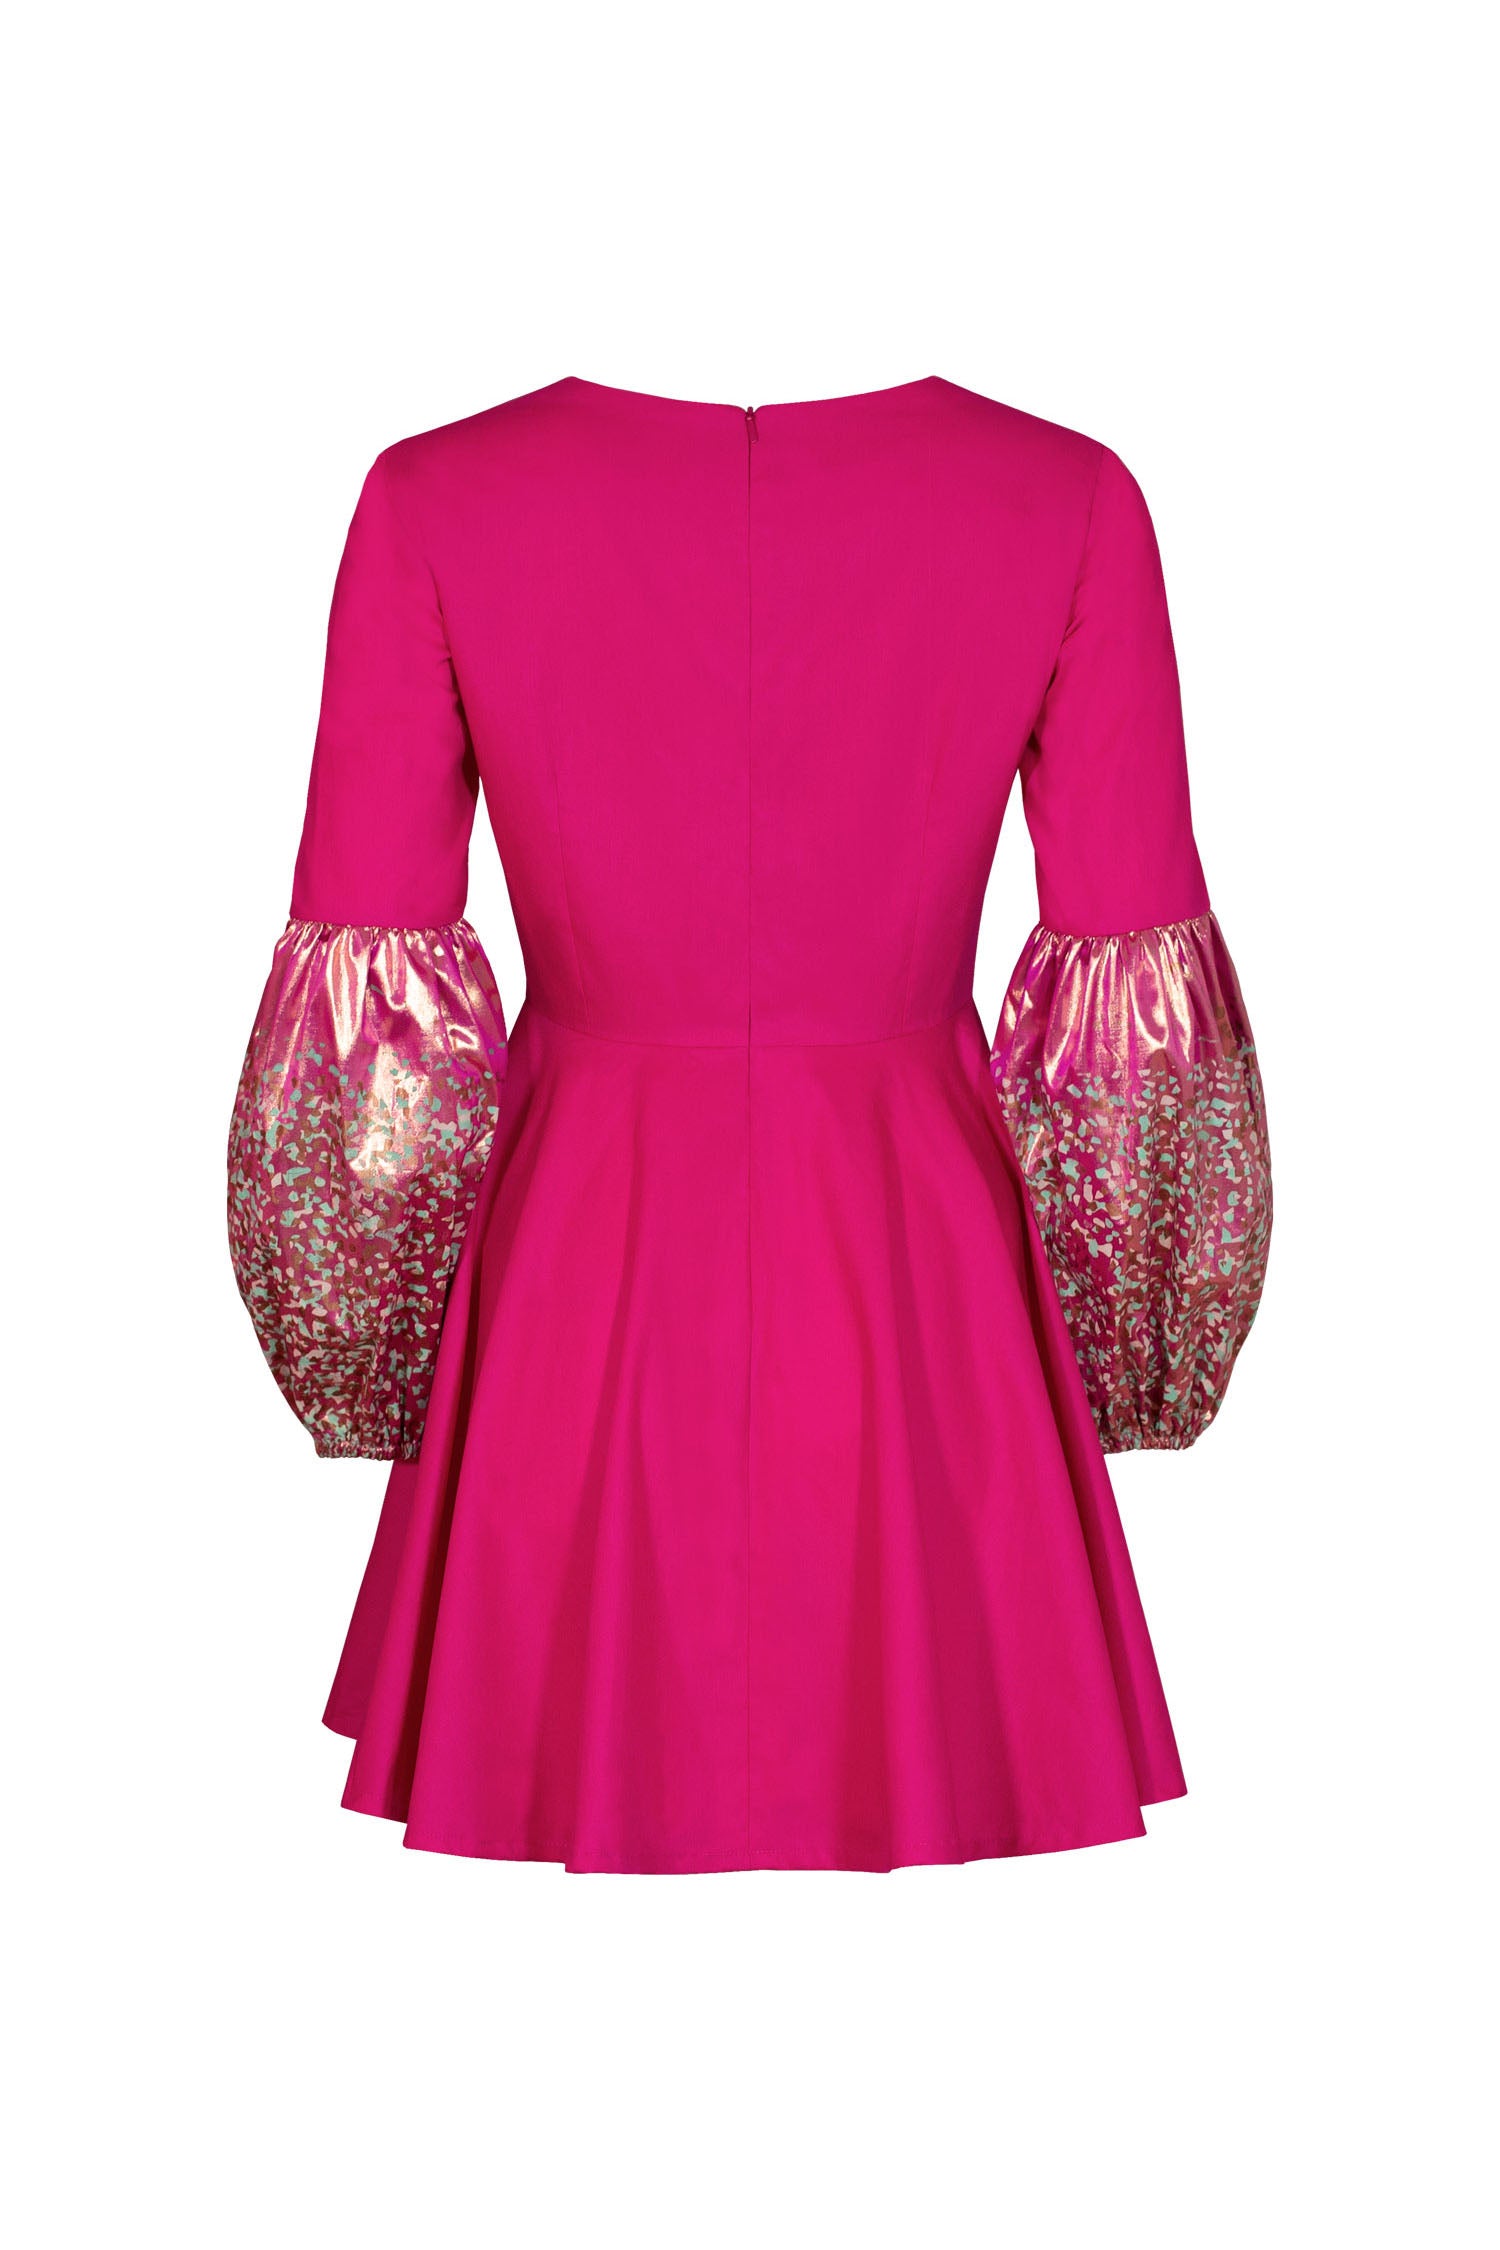 Mayam dress - raspberry pink